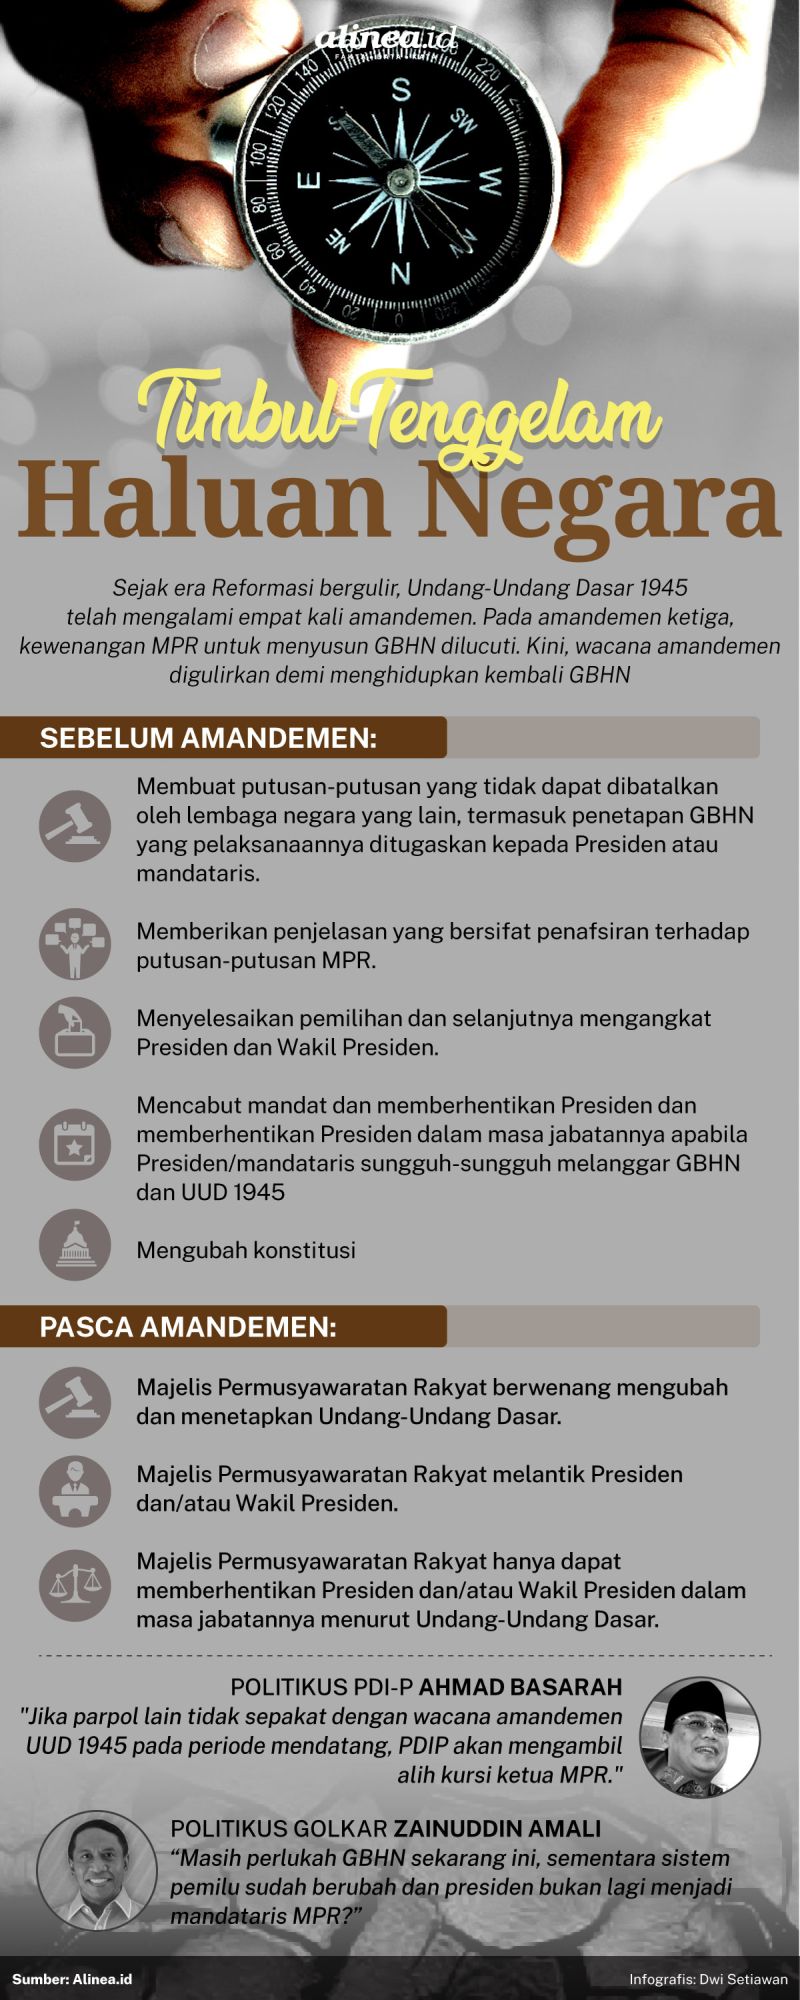 Infografis Alinea.id. /Dwi Setiawan.